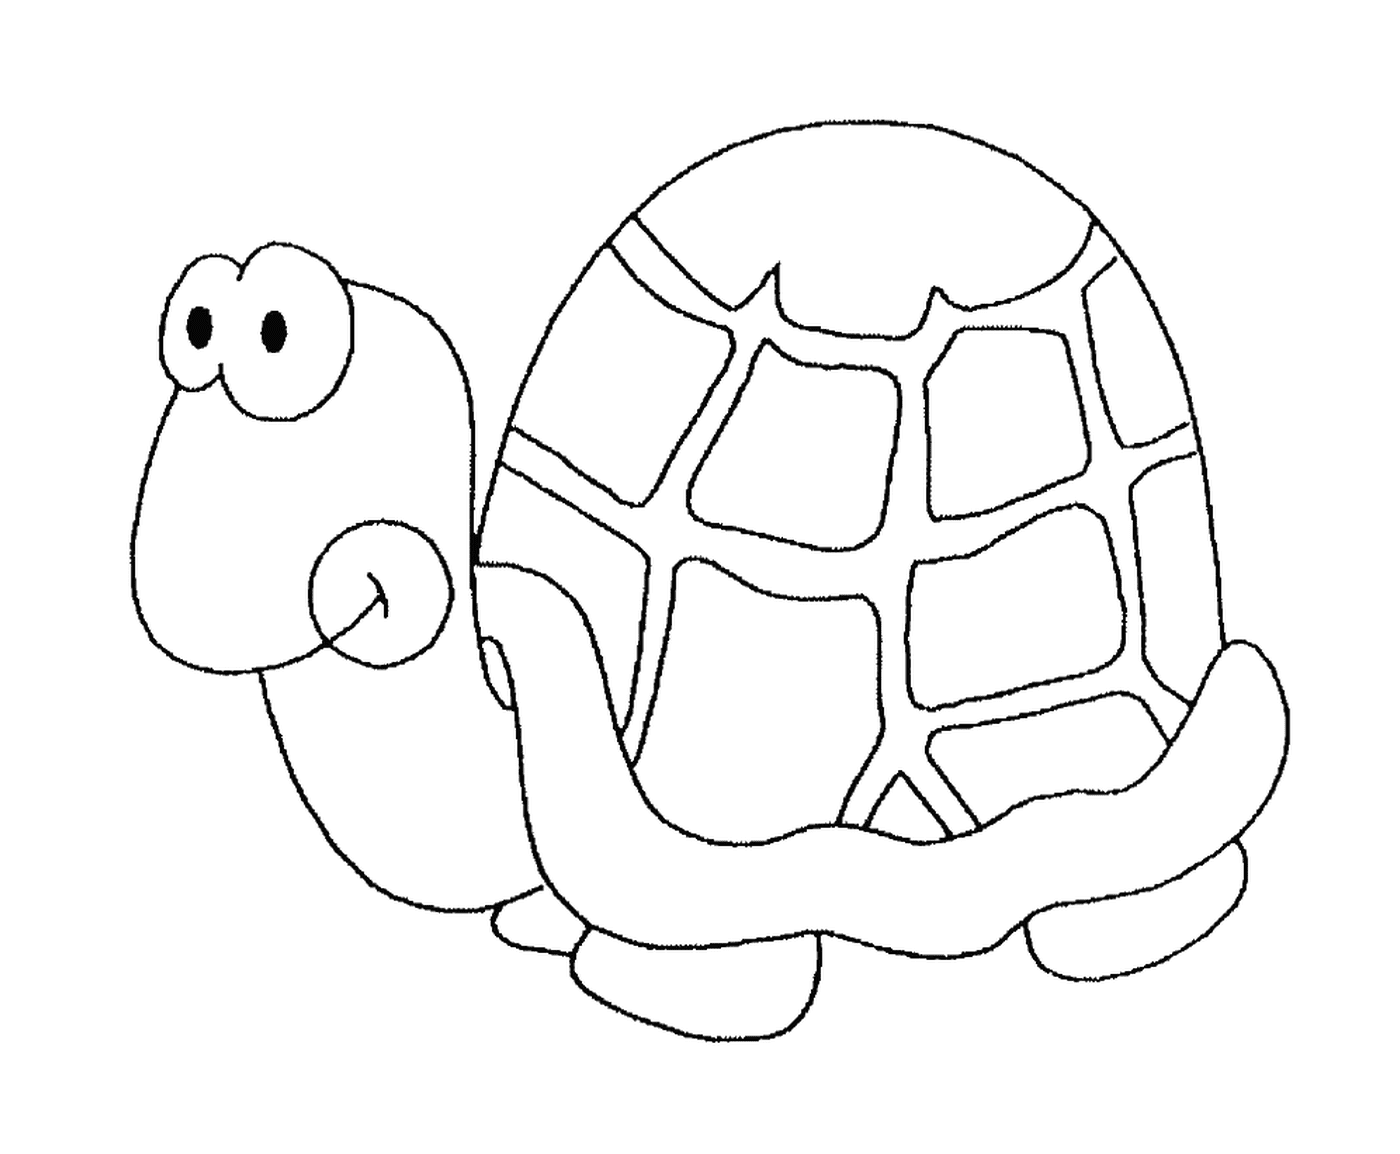  Una tortuga con una caparazón redonda 